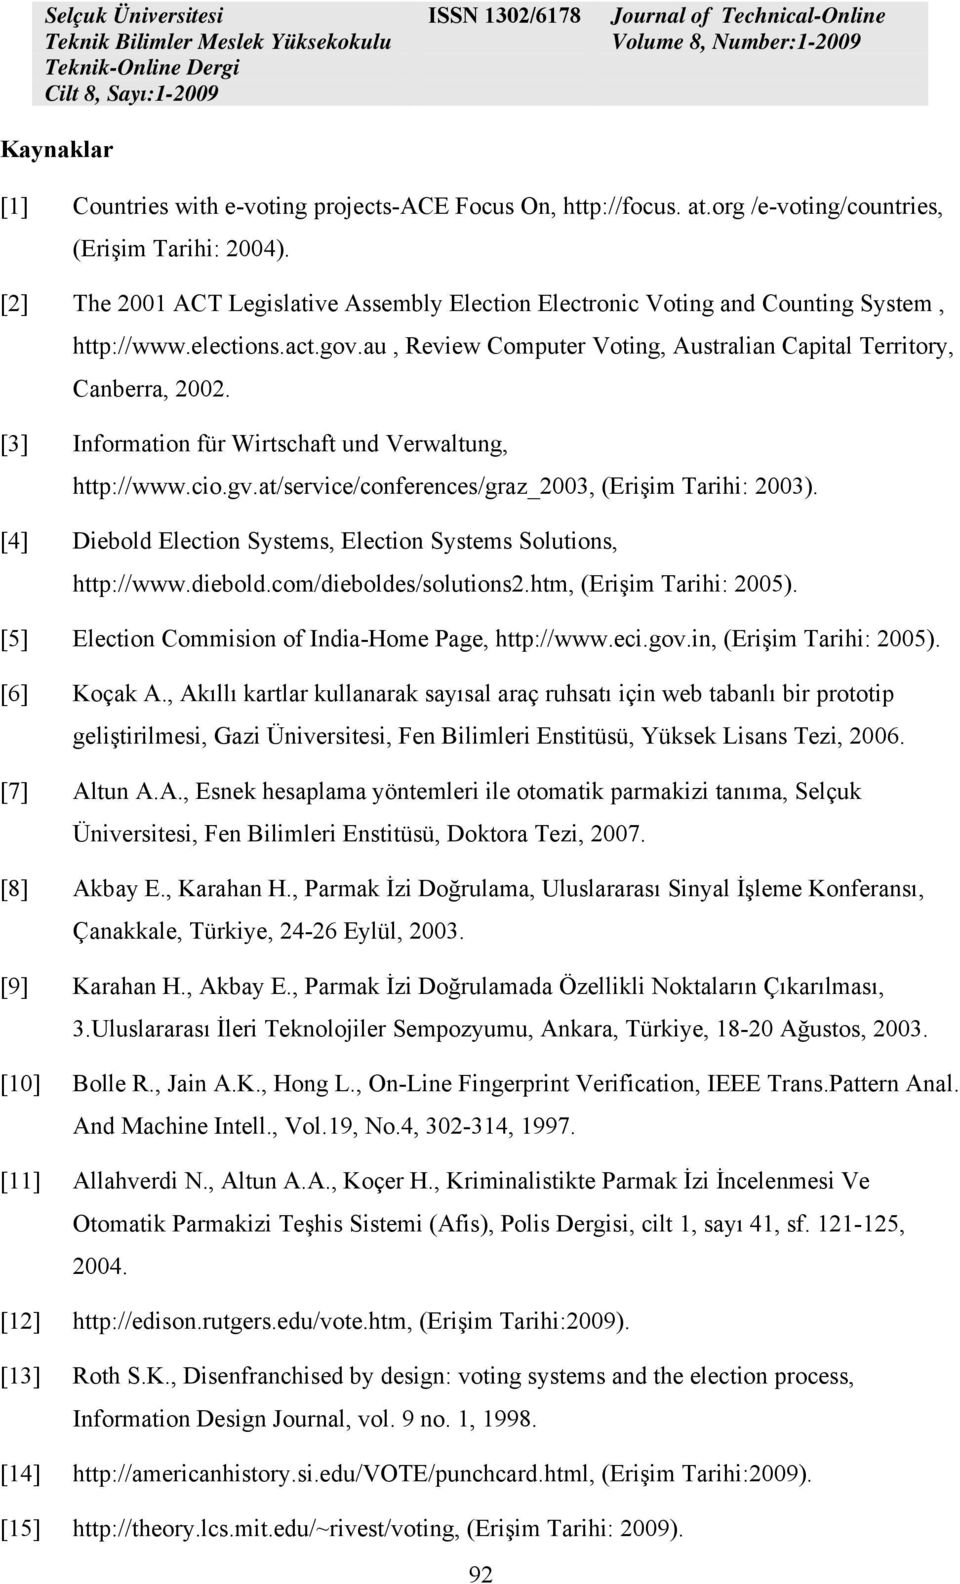 [3] Information für Wirtschaft und Verwaltung, http://www.cio.gv.at/service/conferences/graz_2003, (Erişim Tarihi: 2003). [4] Diebold Election Systems, Election Systems Solutions, http://www.diebold.